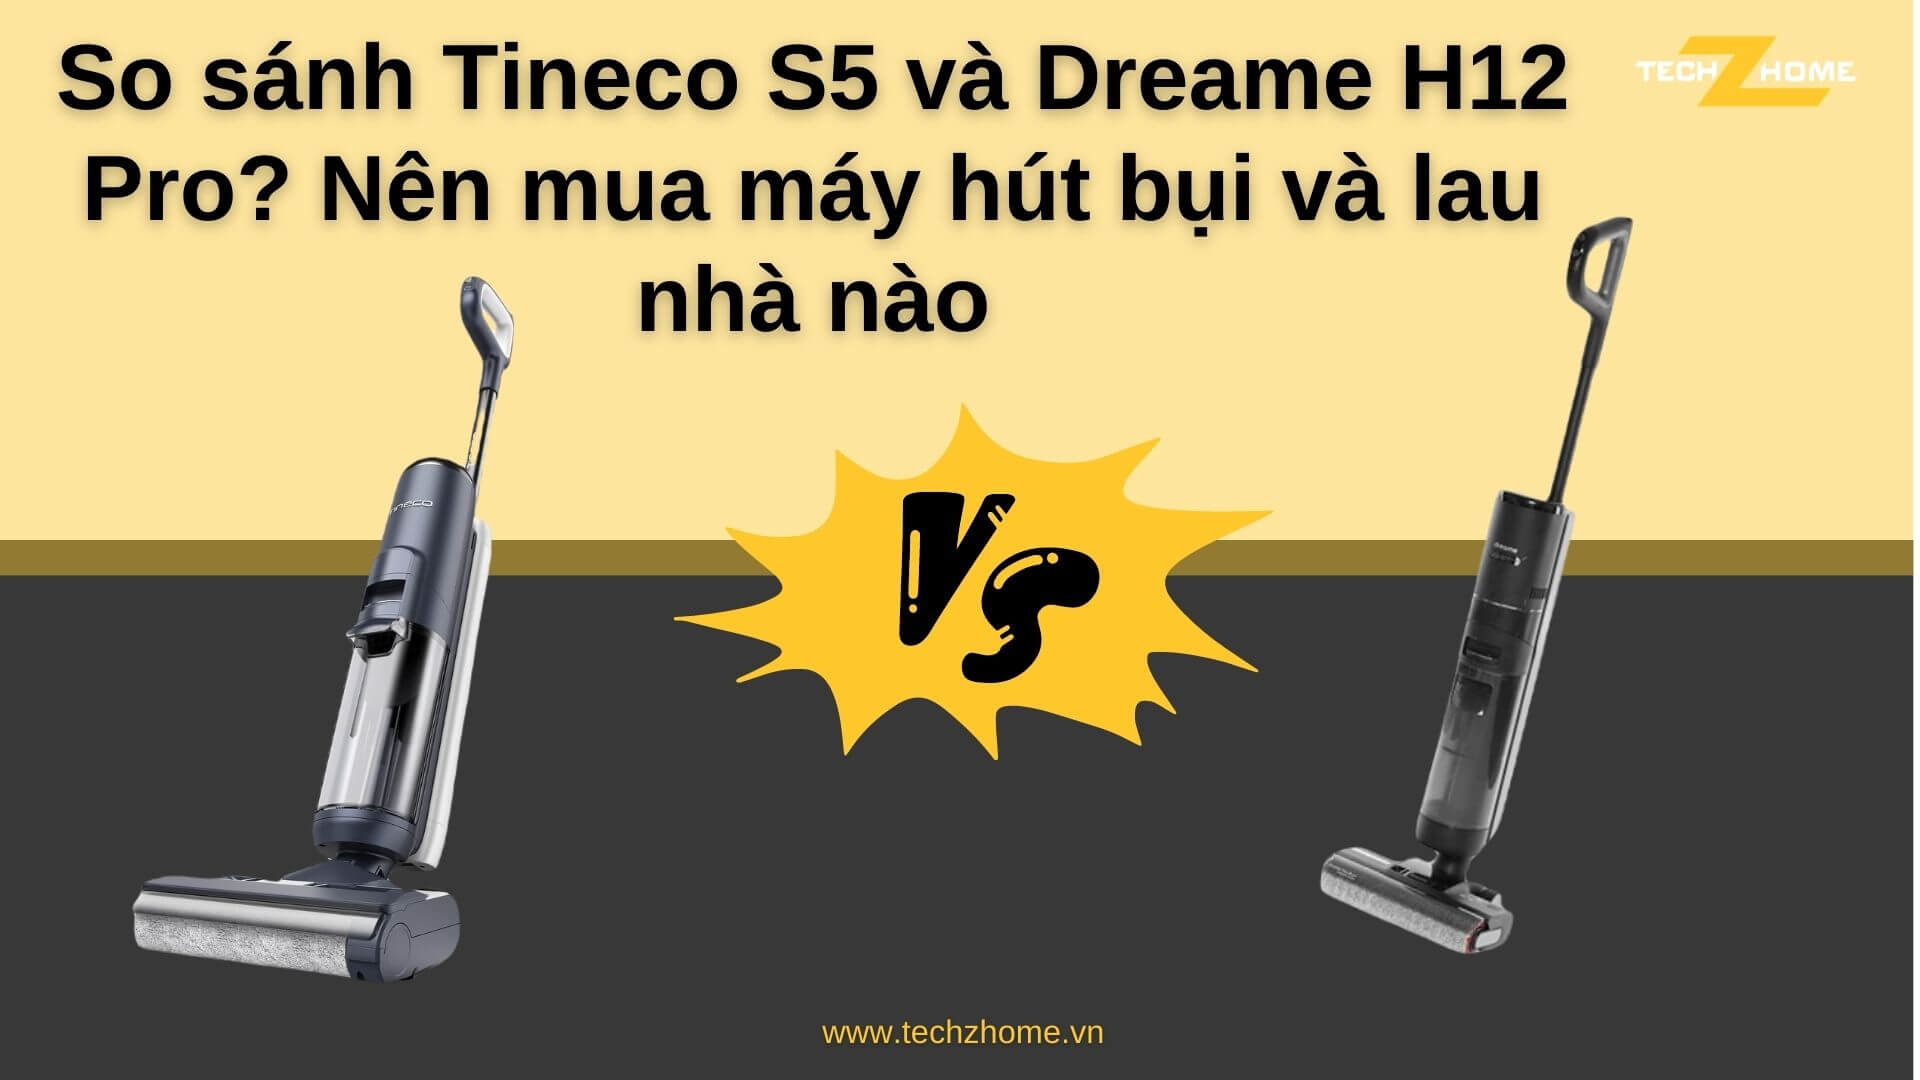 So sánh Tineco S5 và Dreame H12 Pro? Nên mua máy hút bụi và lau nhà nào